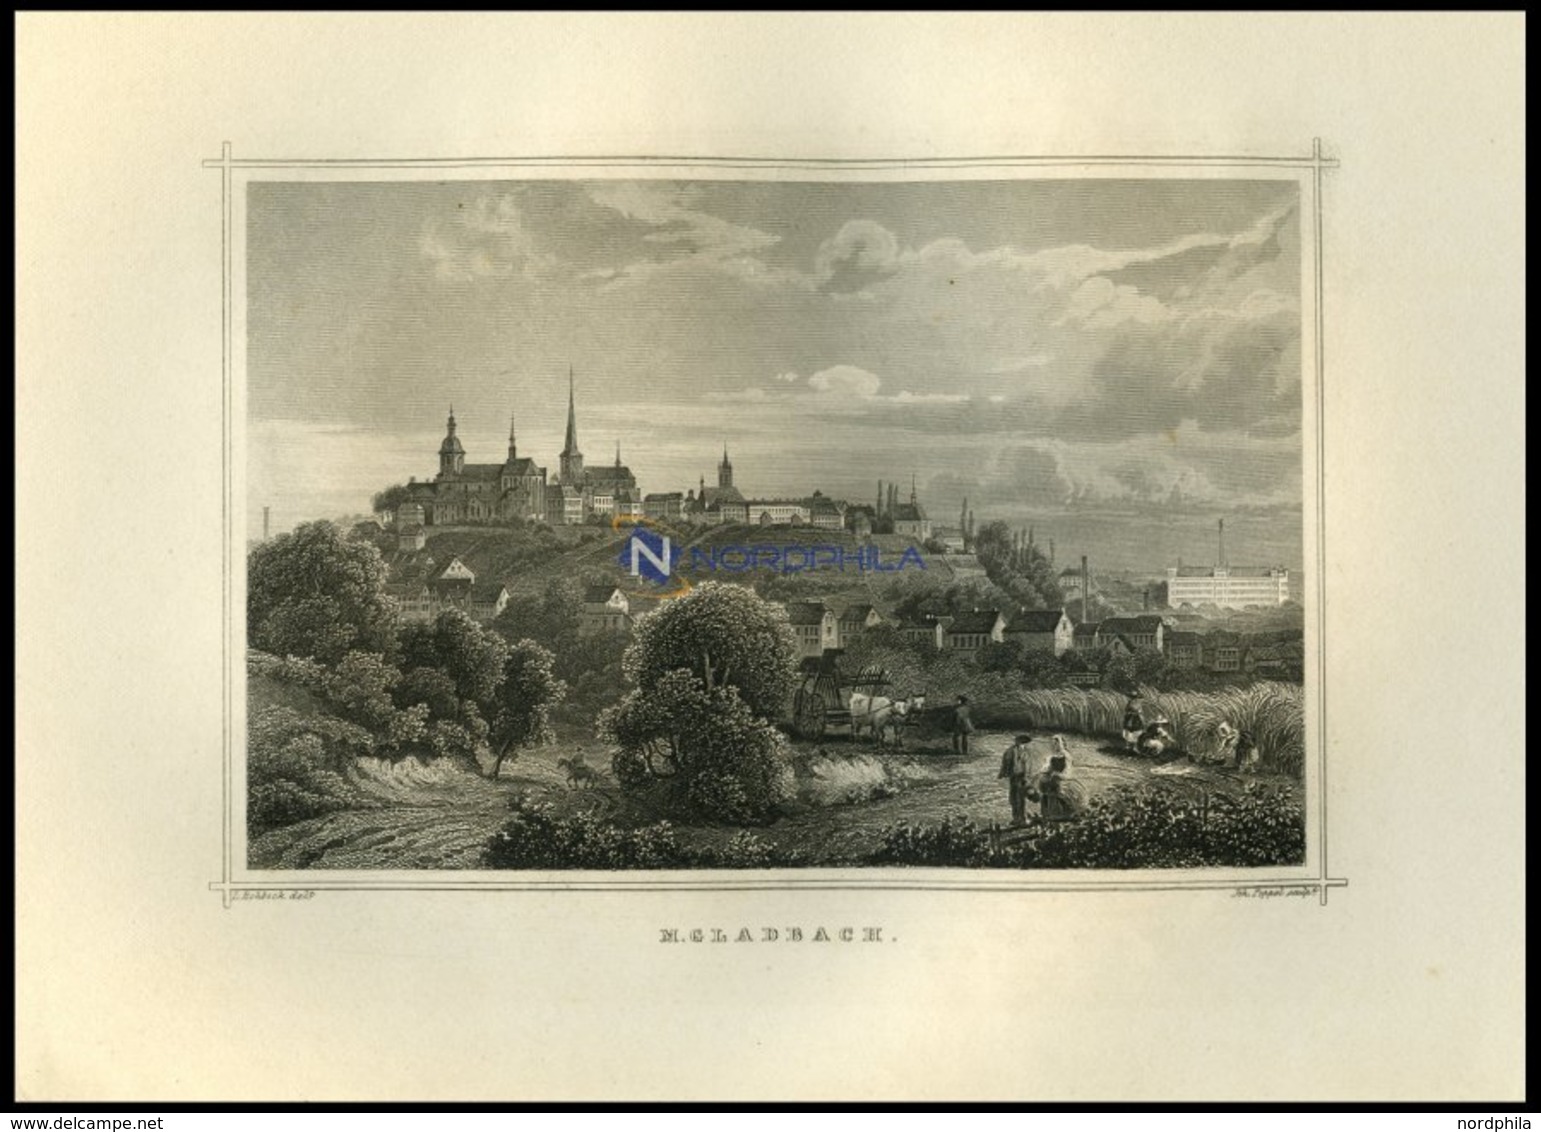 GLADBACH, Gesamtansicht Mit Hübscher Personenstaffage Im Vordergrund, Stahlstich Von Rohbock/Poppel Um 1850 - Lithographies